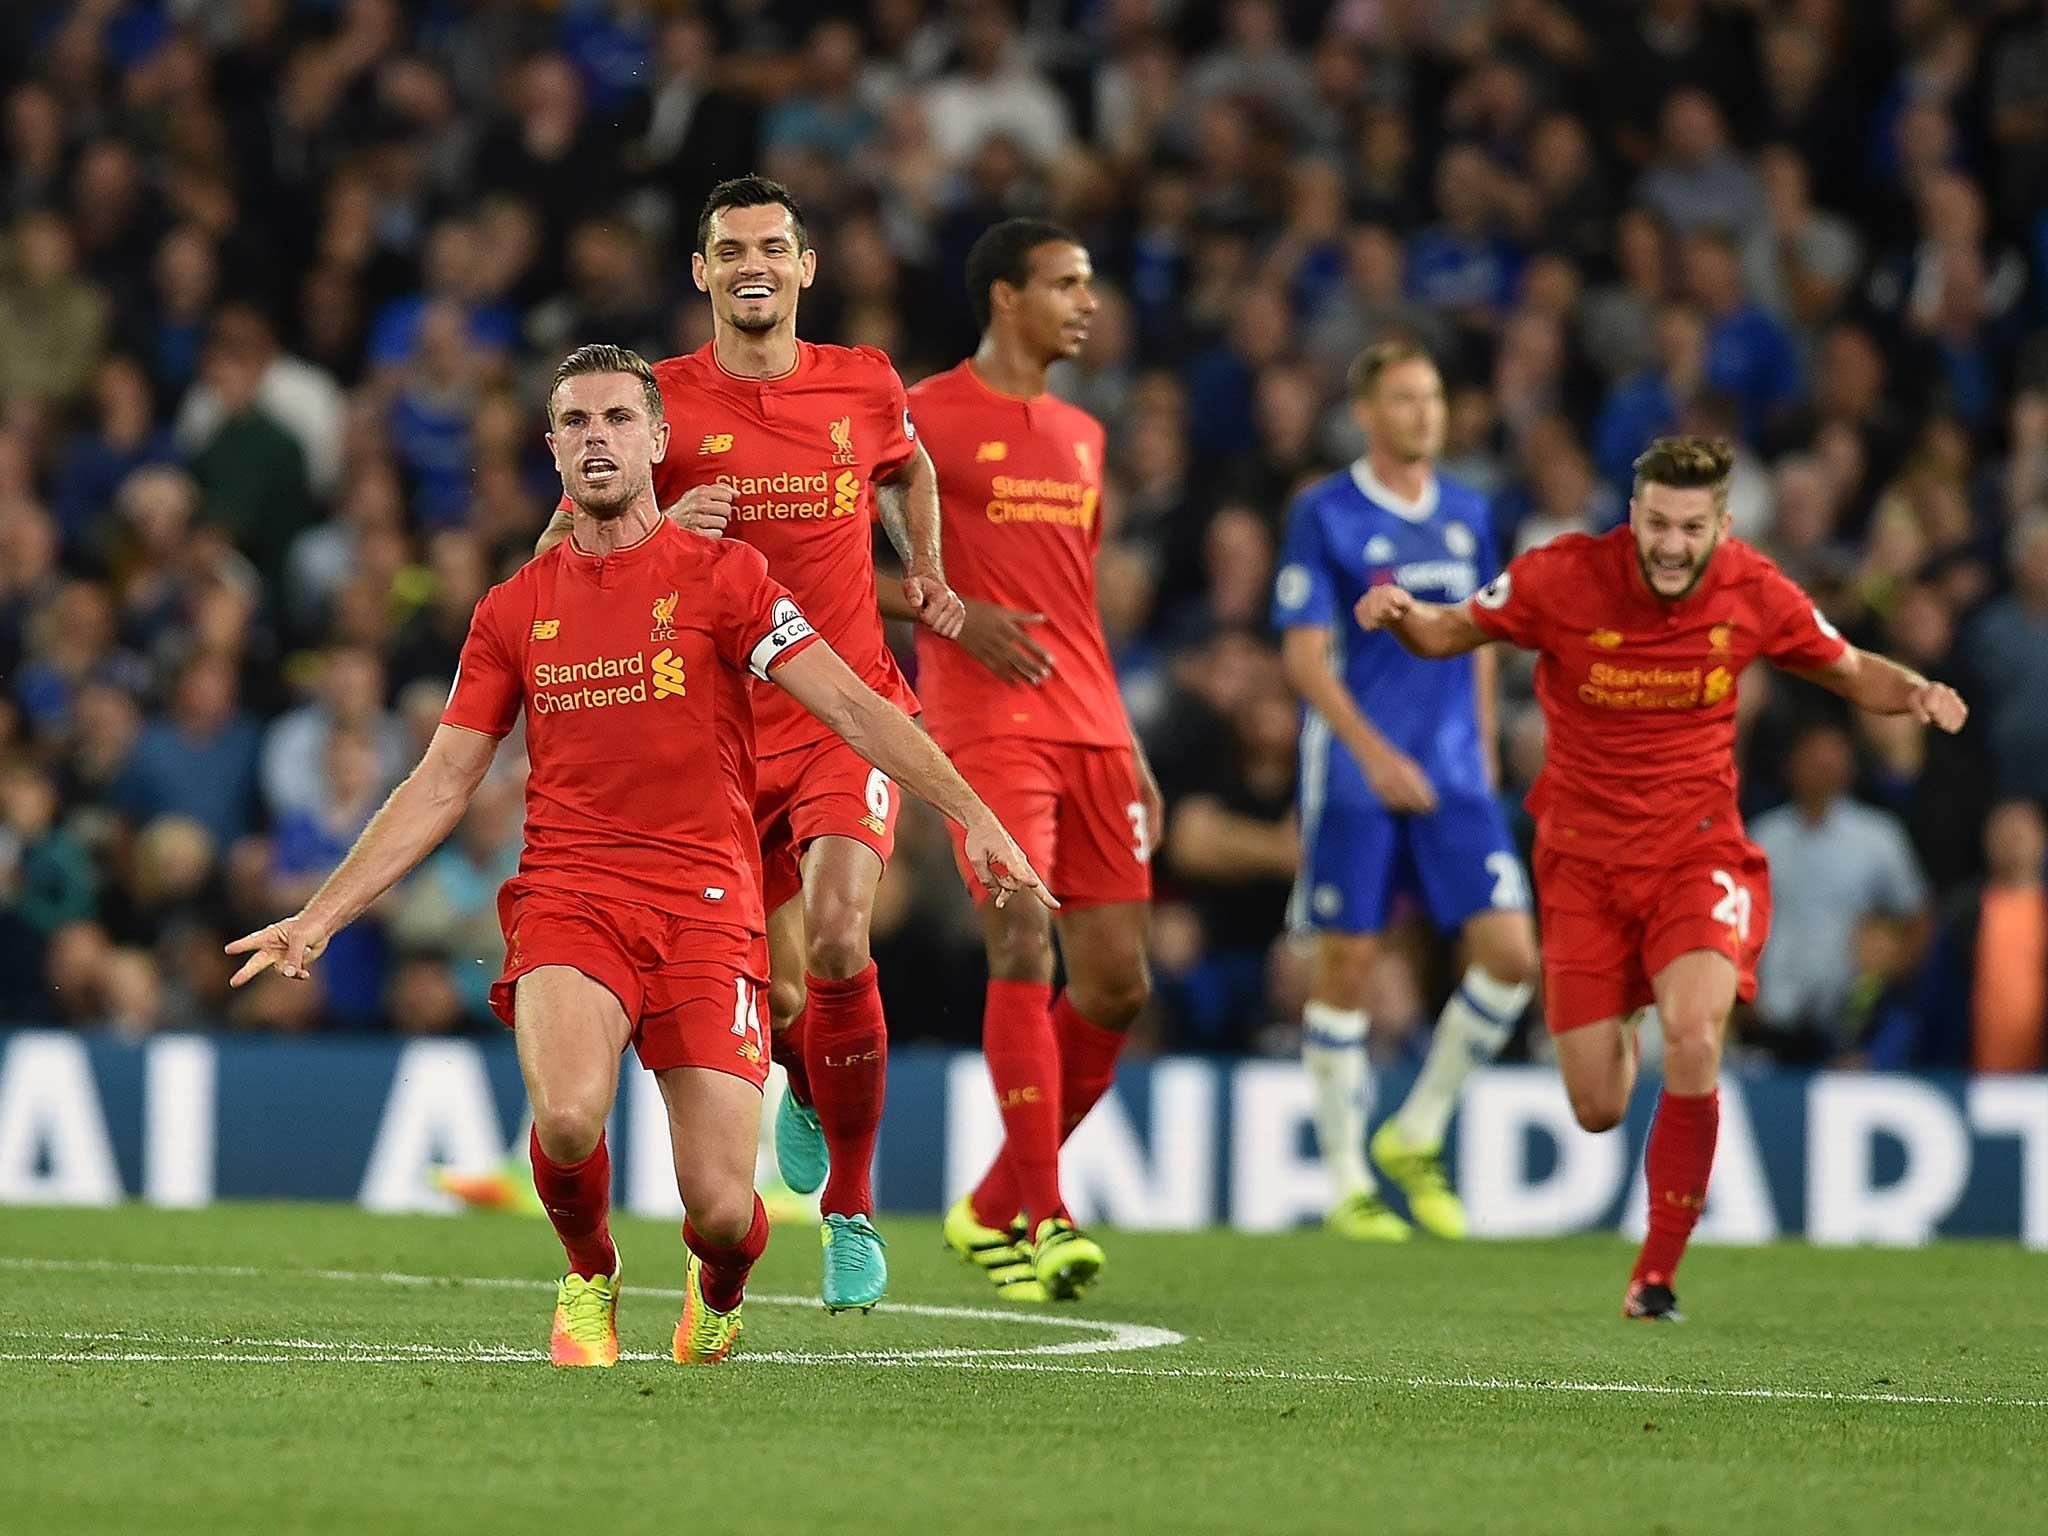 Chelsea vs Liverpool match report: Dejan Lovren and Jordan Henderson